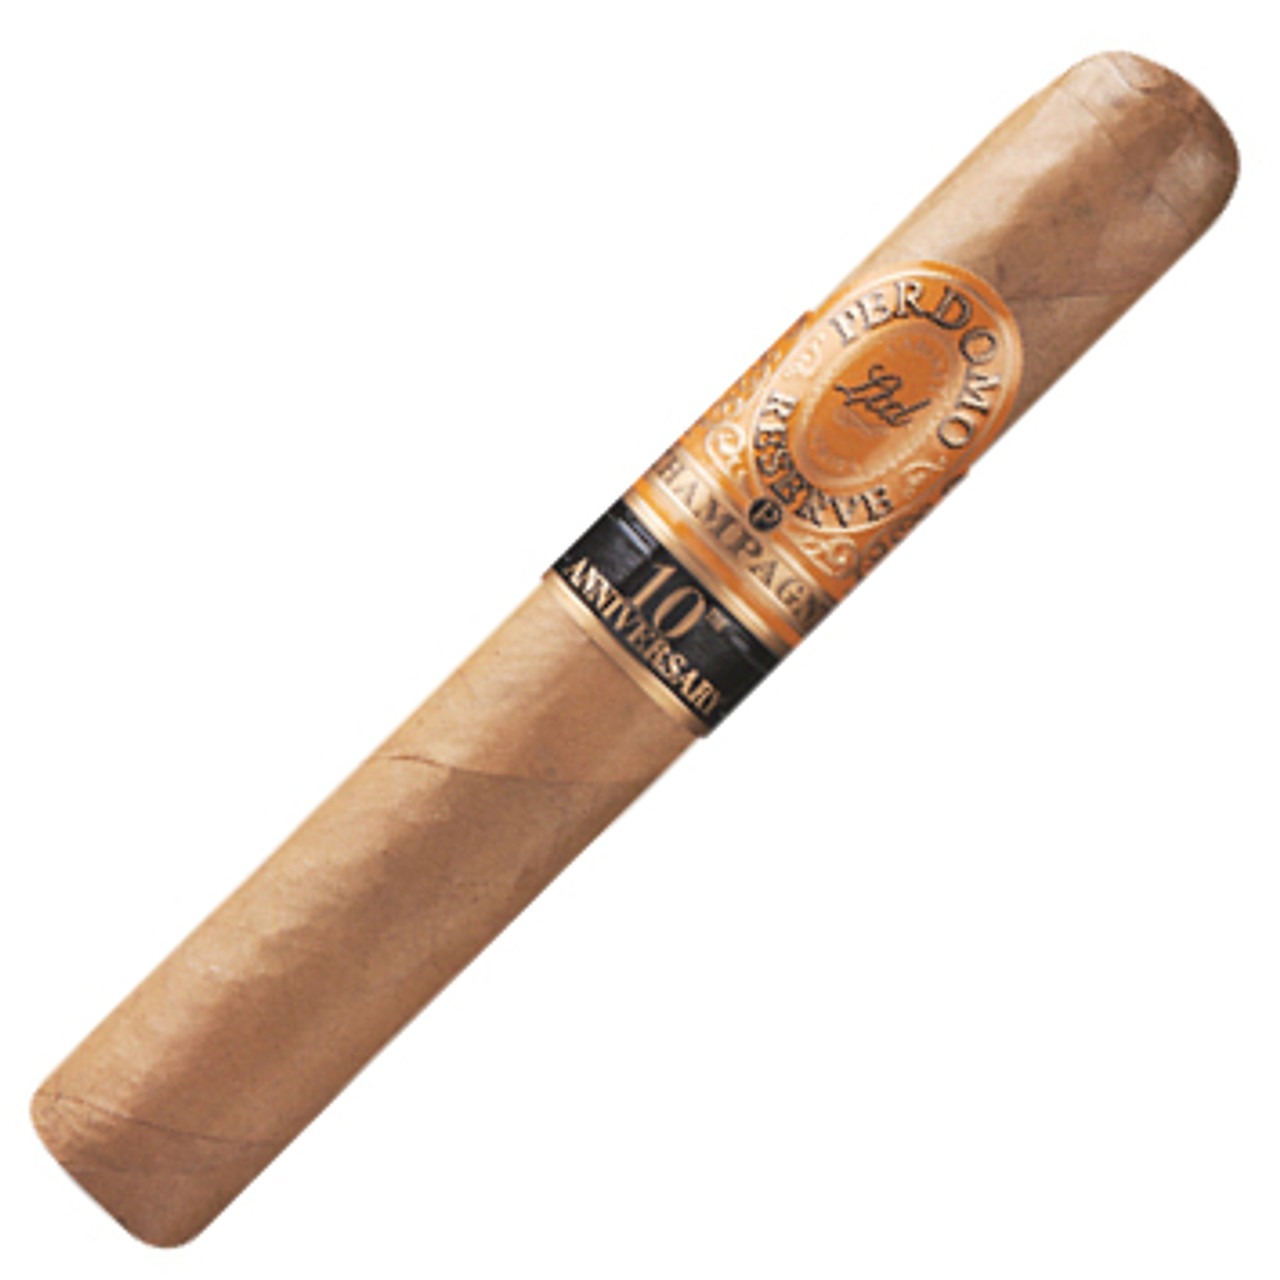 Perdomo Reserve 10th Anniversary Super Toro Cigars - 6 x 60 (Box of 25)